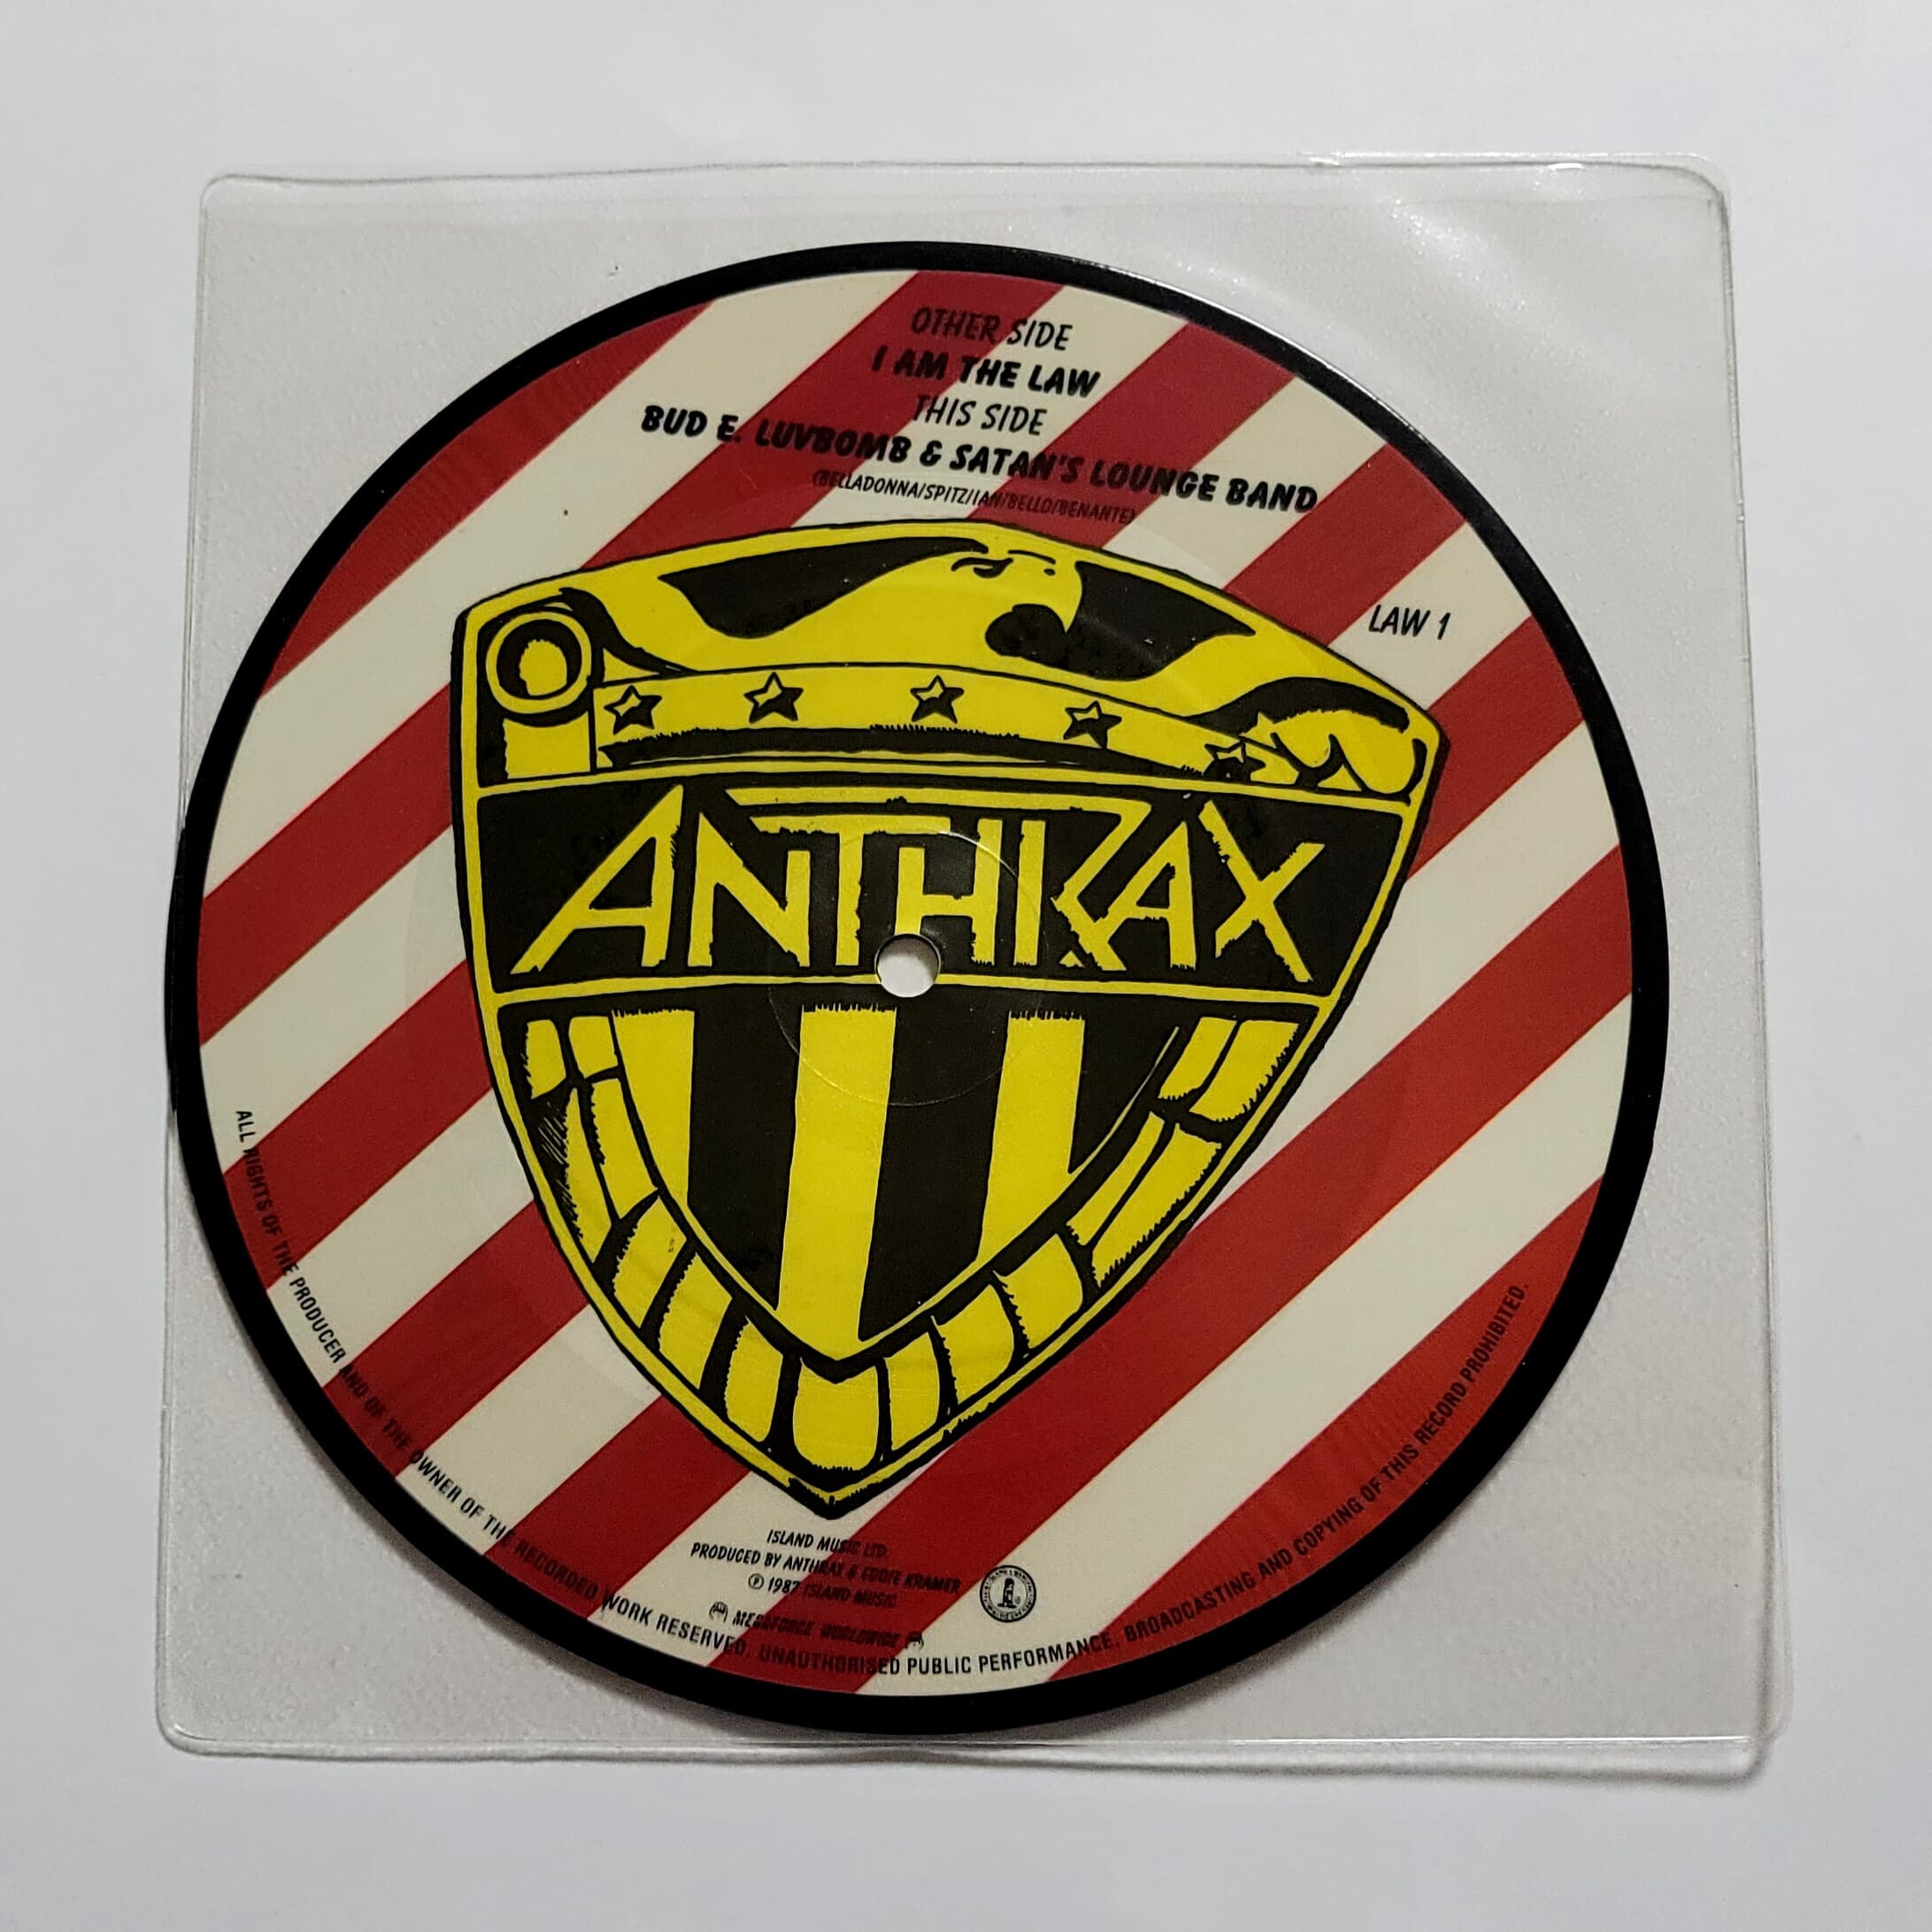 (희귀 초판 7인치 바이닐 픽쳐디스크 한정반) Anthrax - I Am the Law (싱글)